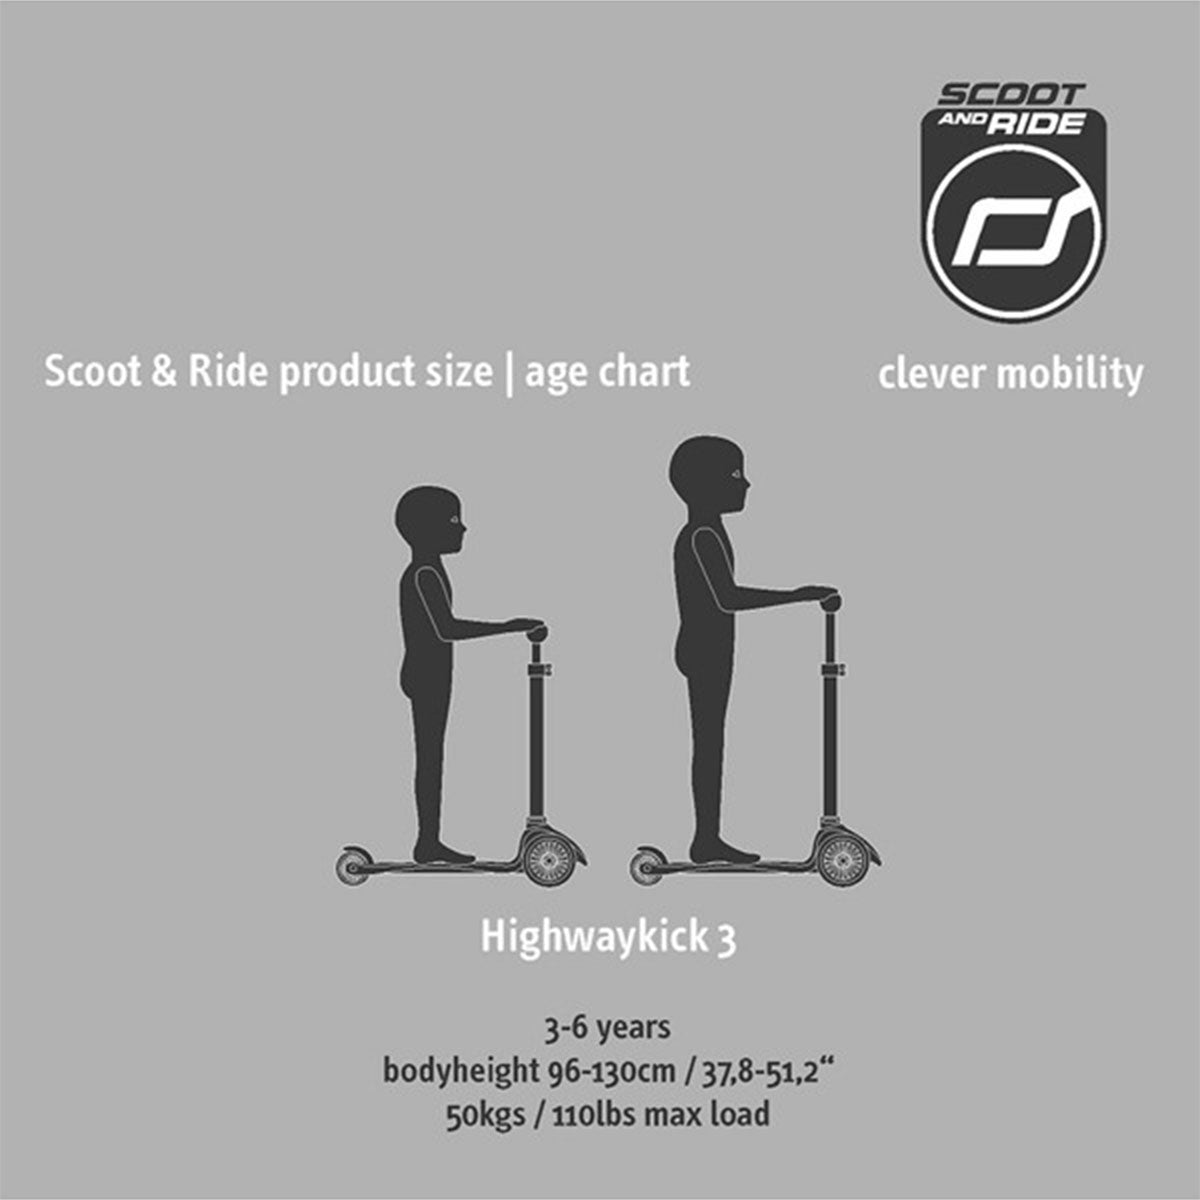 De Scoot and Ride Highwaykick 3 ash is een fijne step voor kinderen vanaf 3 jaar. De Highwaykick is goed voor de ontwikkeling van de fijne motoriek, het evenwichtsgevoel en het zelfvertrouwen van kinderen. VanZus.